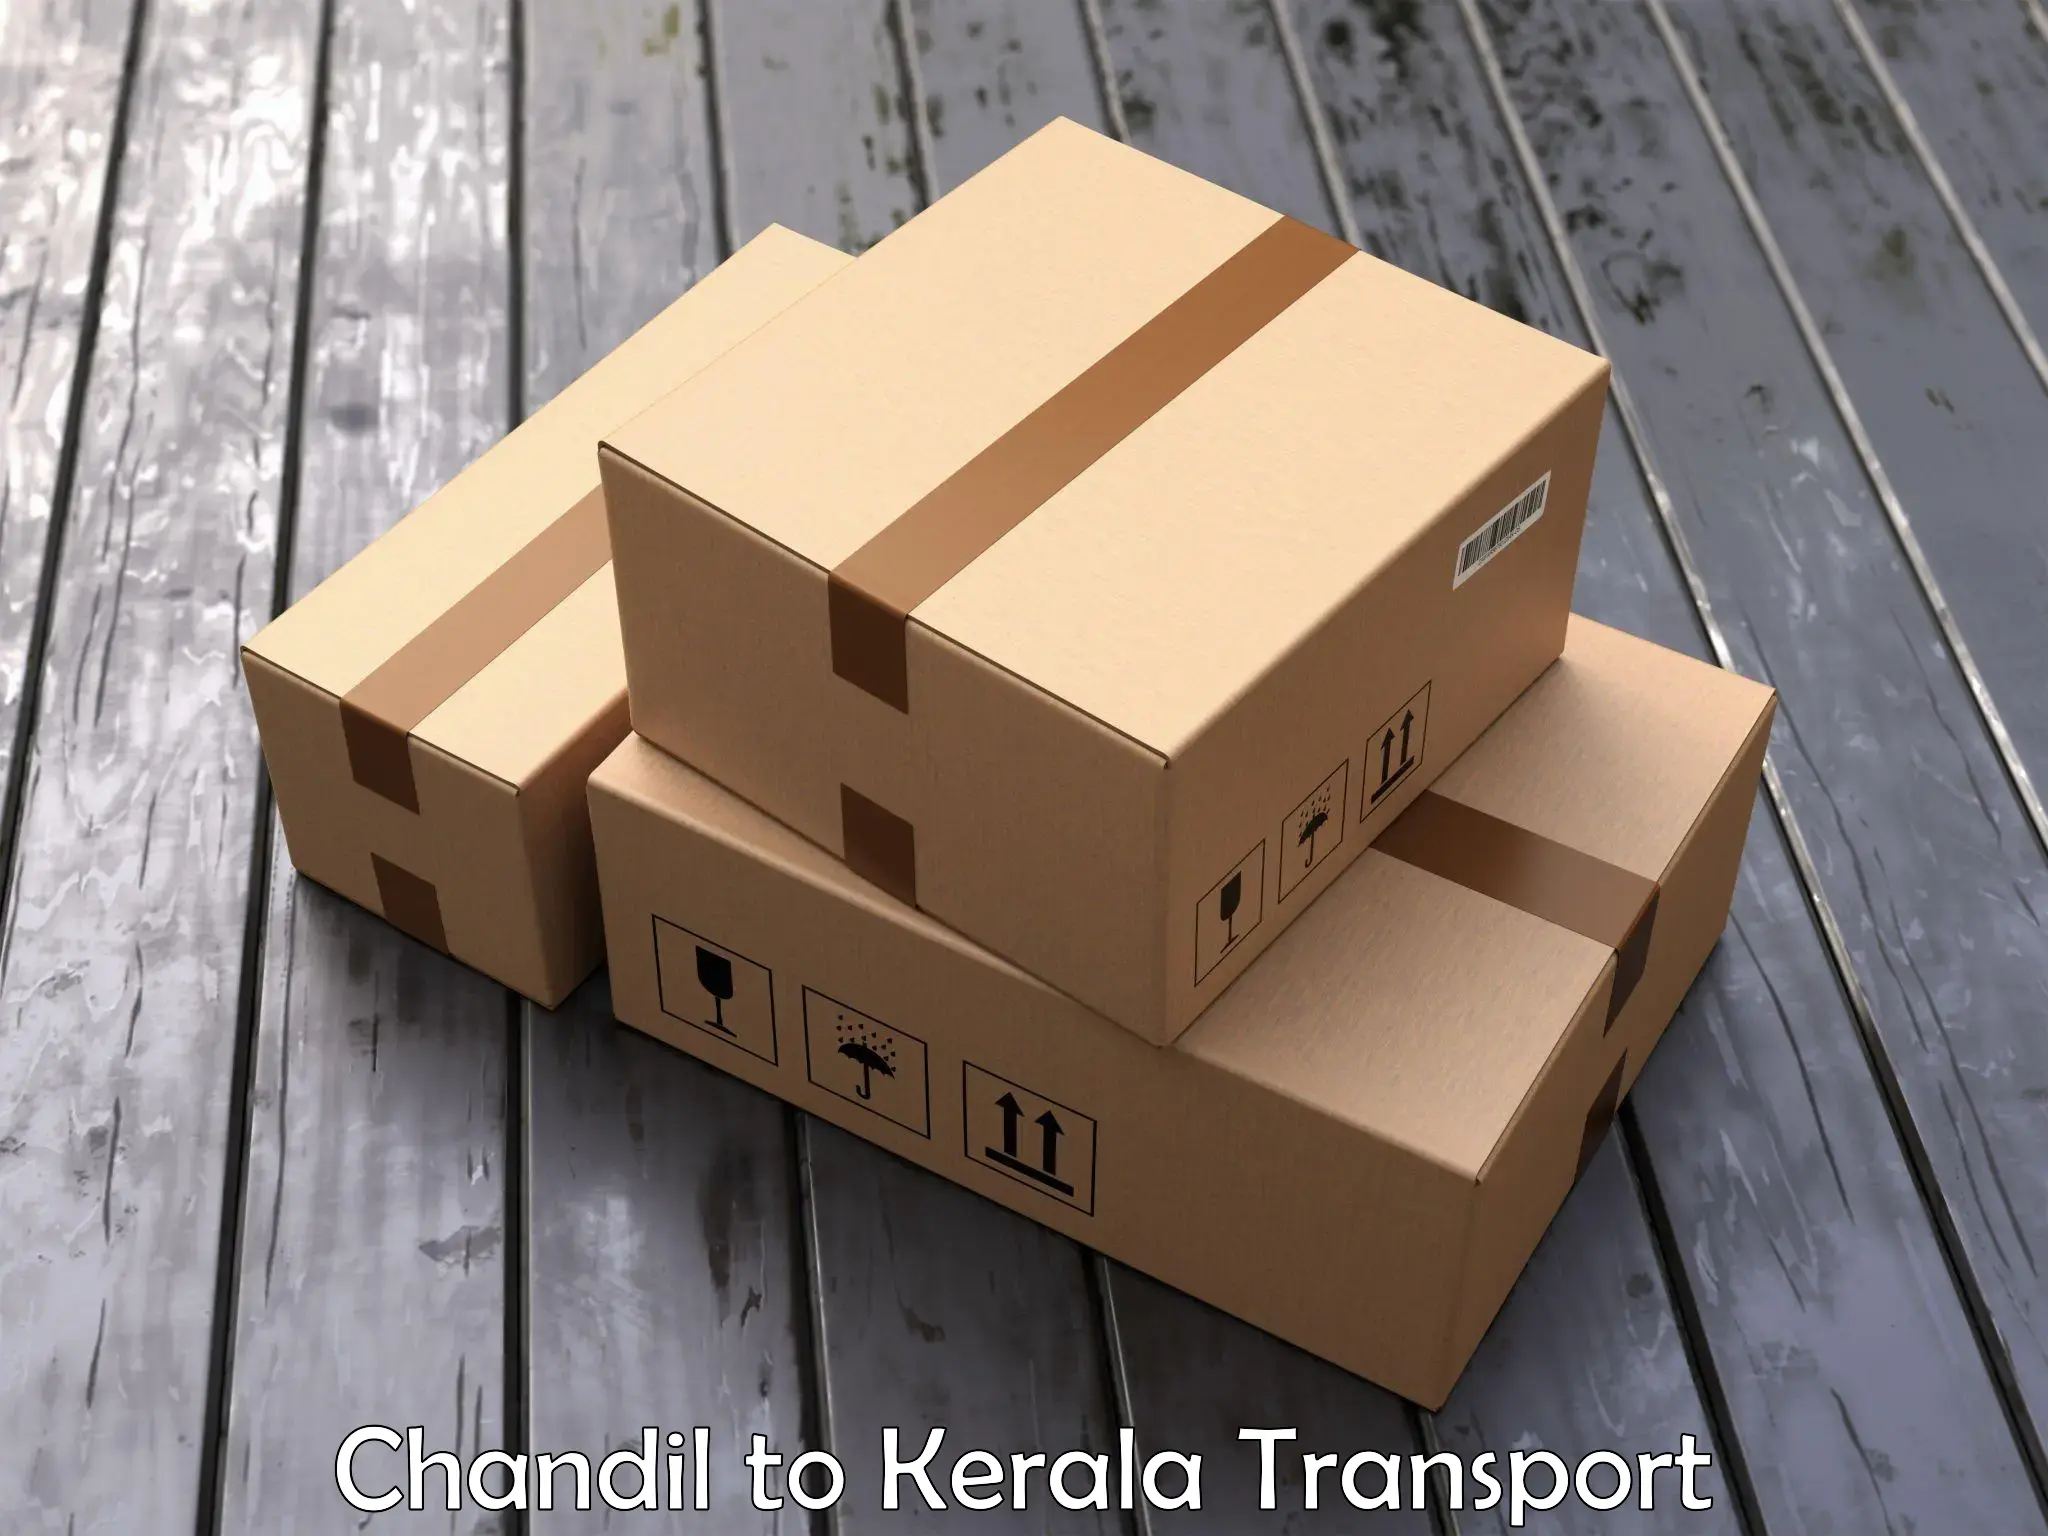 Bike transport service Chandil to Cherthala